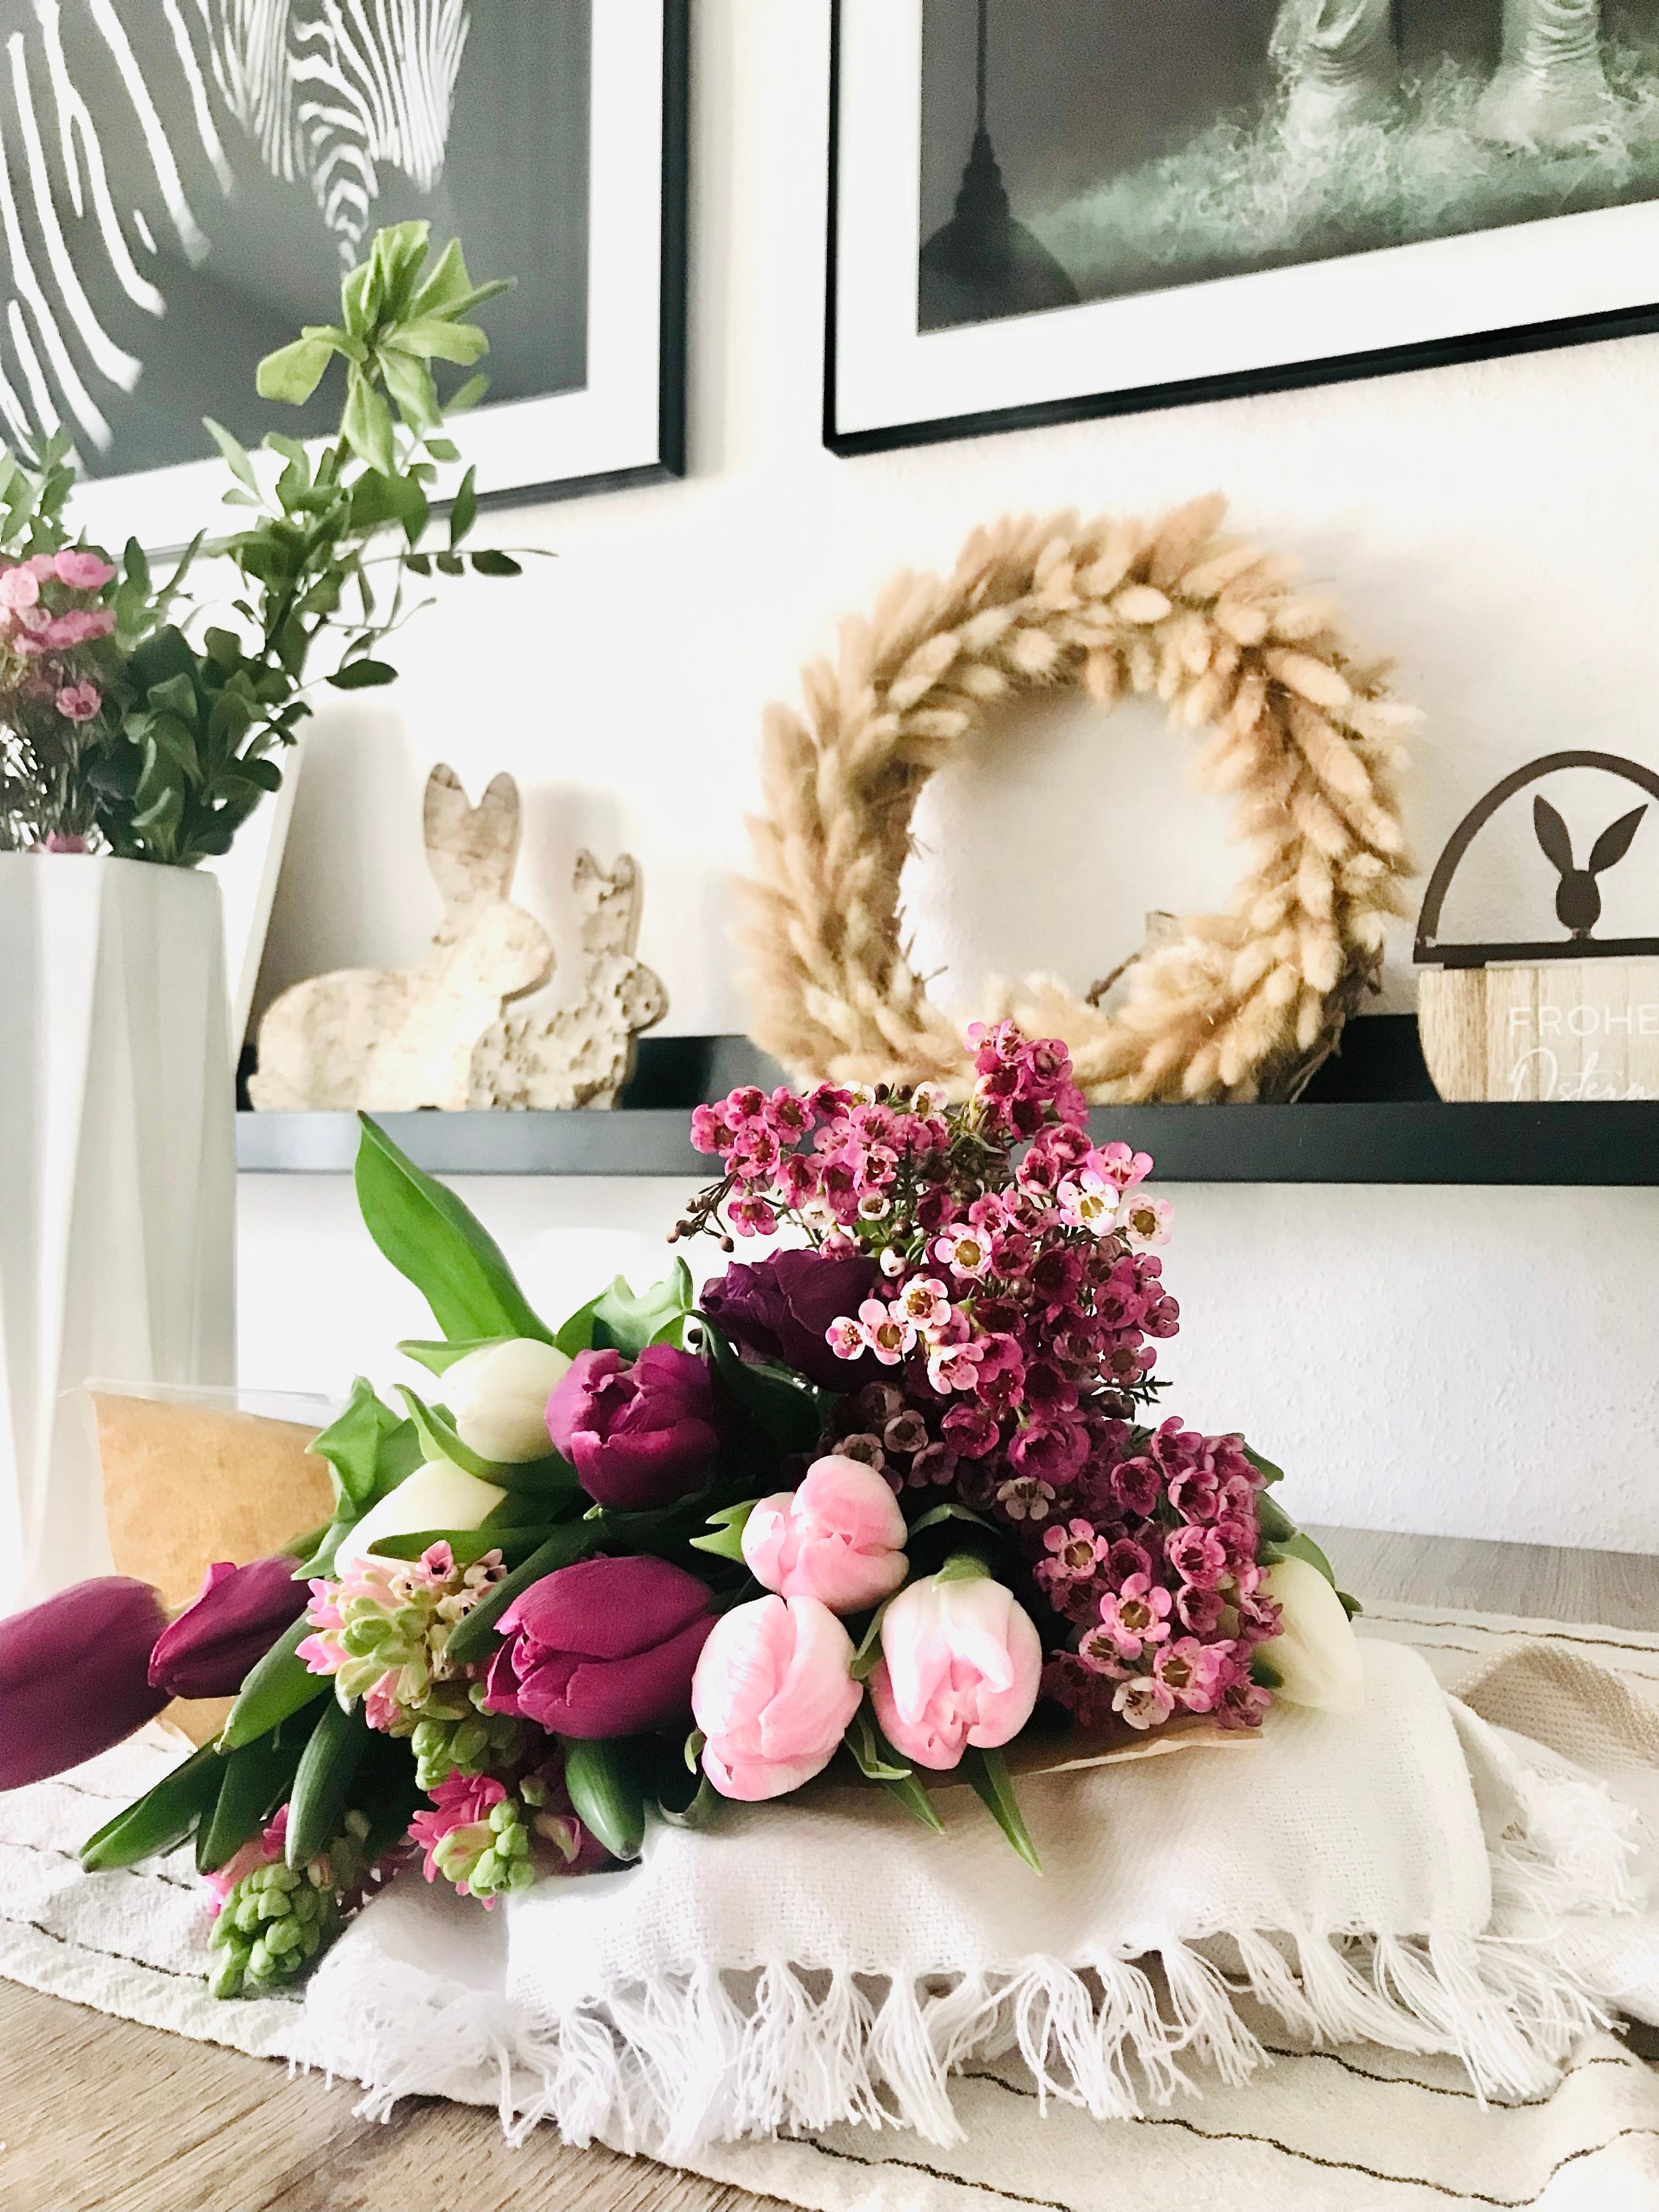 Wochenend Blumen 💐 
#vase #wandboard #tulpen #spring #osterdeko #home #esstisch #kranz #tischläufer #holzhase 